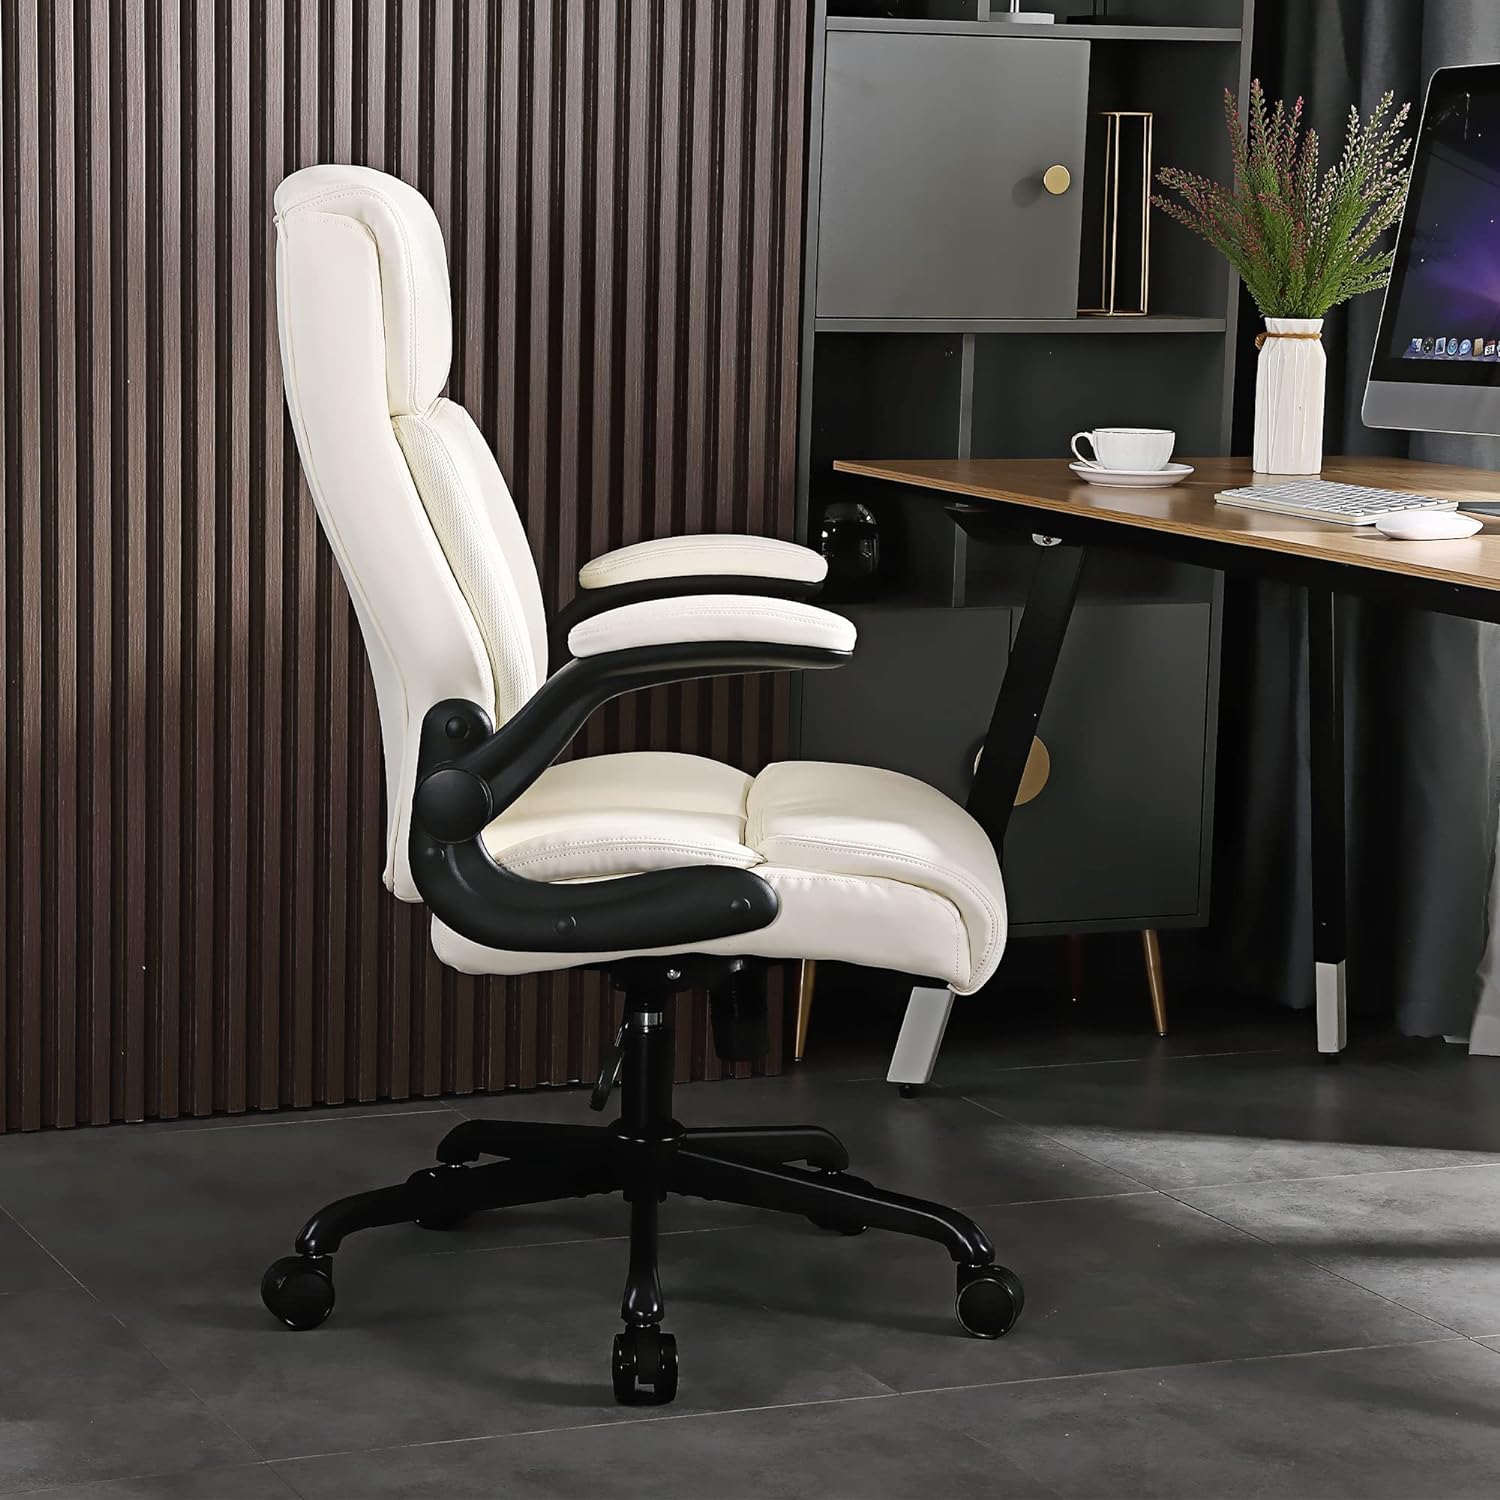 Silla de oficina con respaldo alto, silla de escritorio para computadora,  sillas ejecutivas ergonómicas con ruedas y reposabrazos abatibles, color